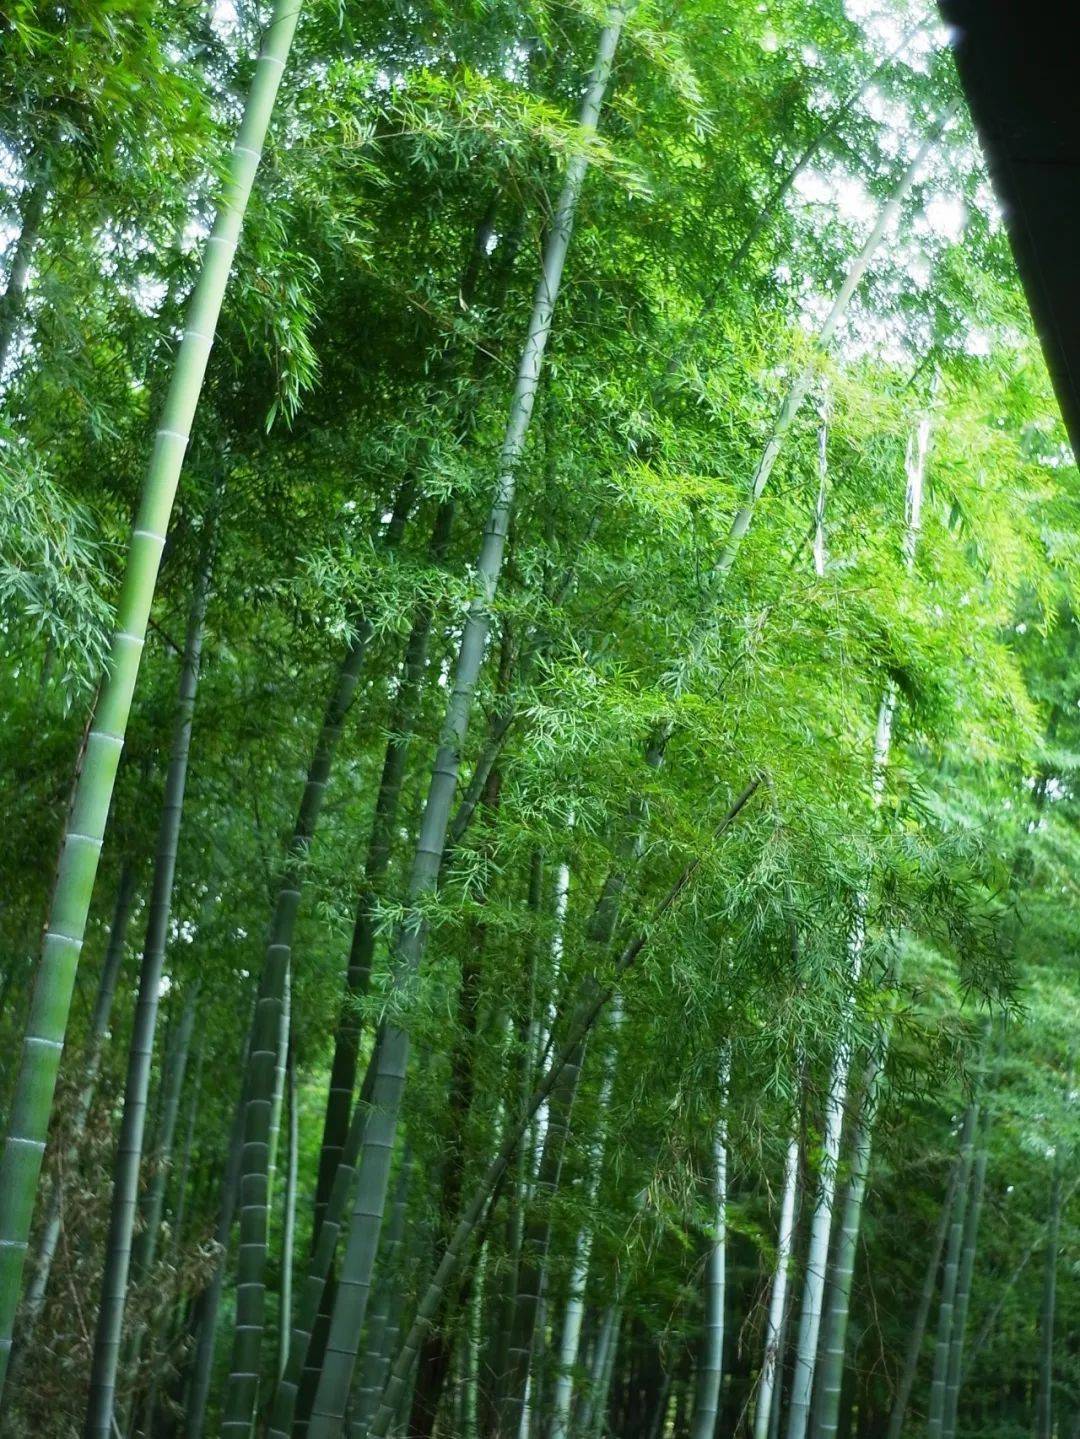 最美的夏天黄龙岘竹林古道夏季的黄龙岘竹林微风过处枝叶随风摇摆像